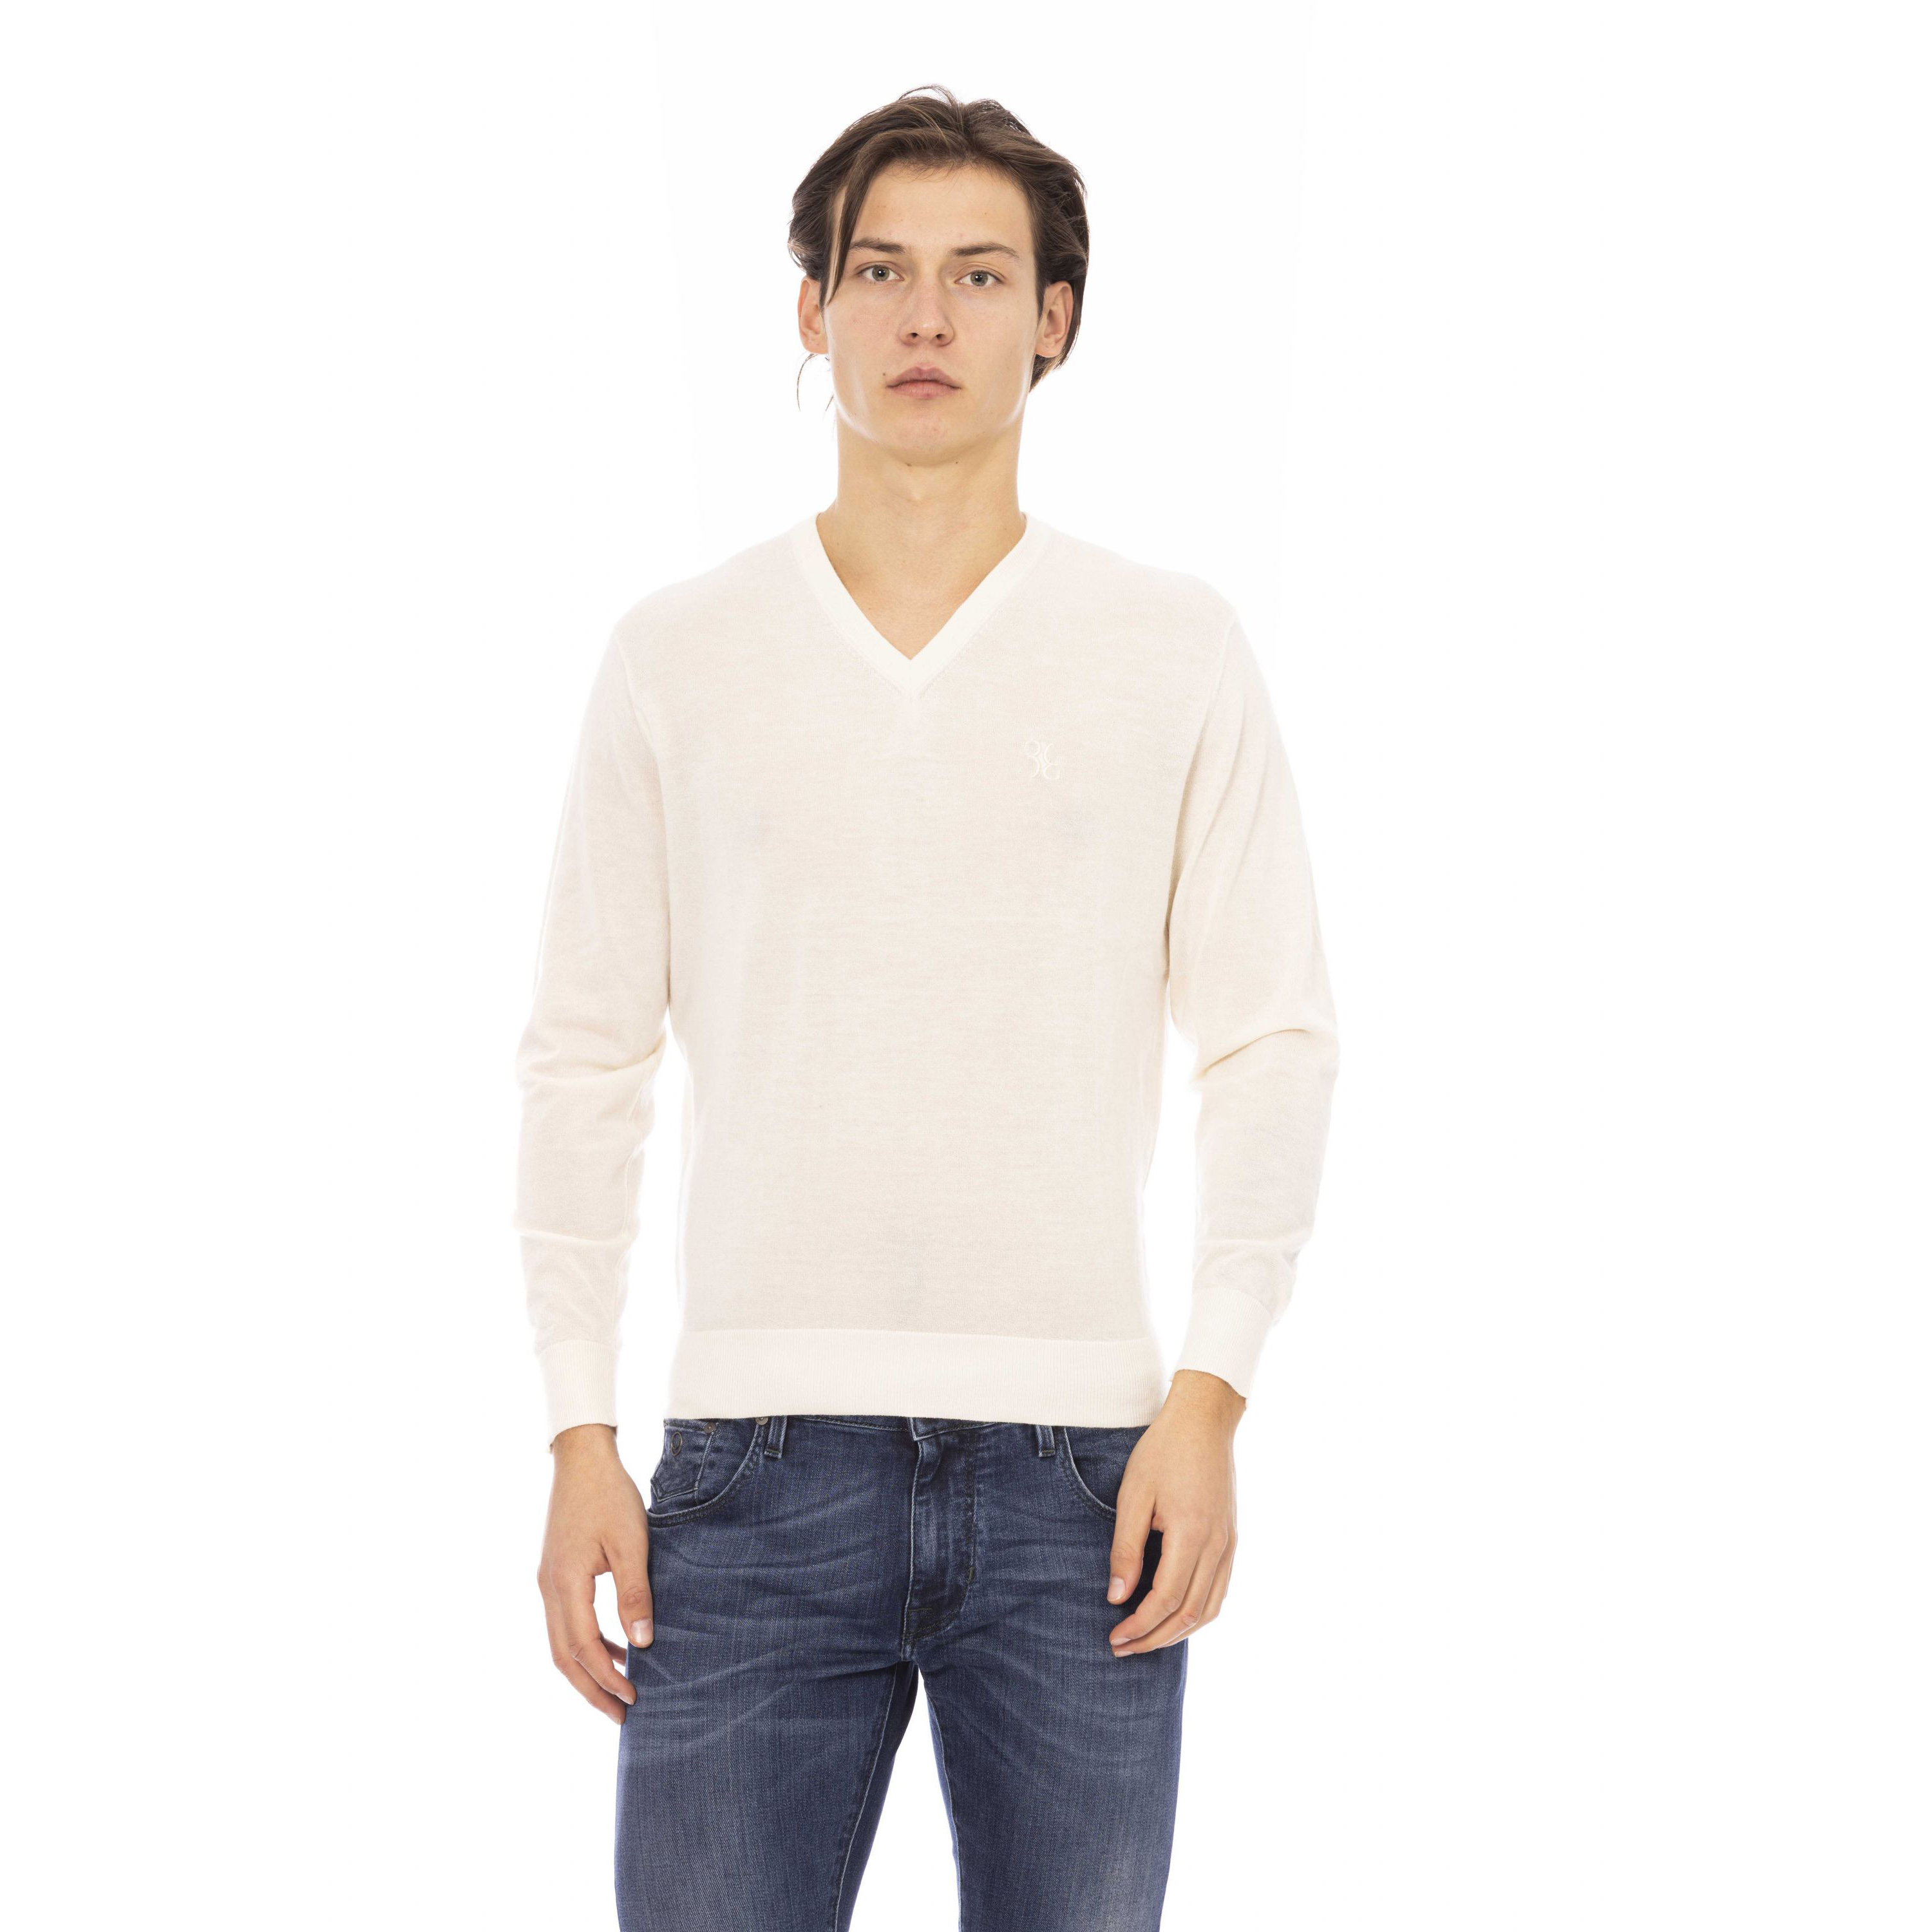 Пуловер Billionaire V Neck Sweater, молочный женский пуловер топ пуловер с леопардовым принтом свитшот осенний женский пуловер с v образным вырезом асимметричный цветной пуловер с л